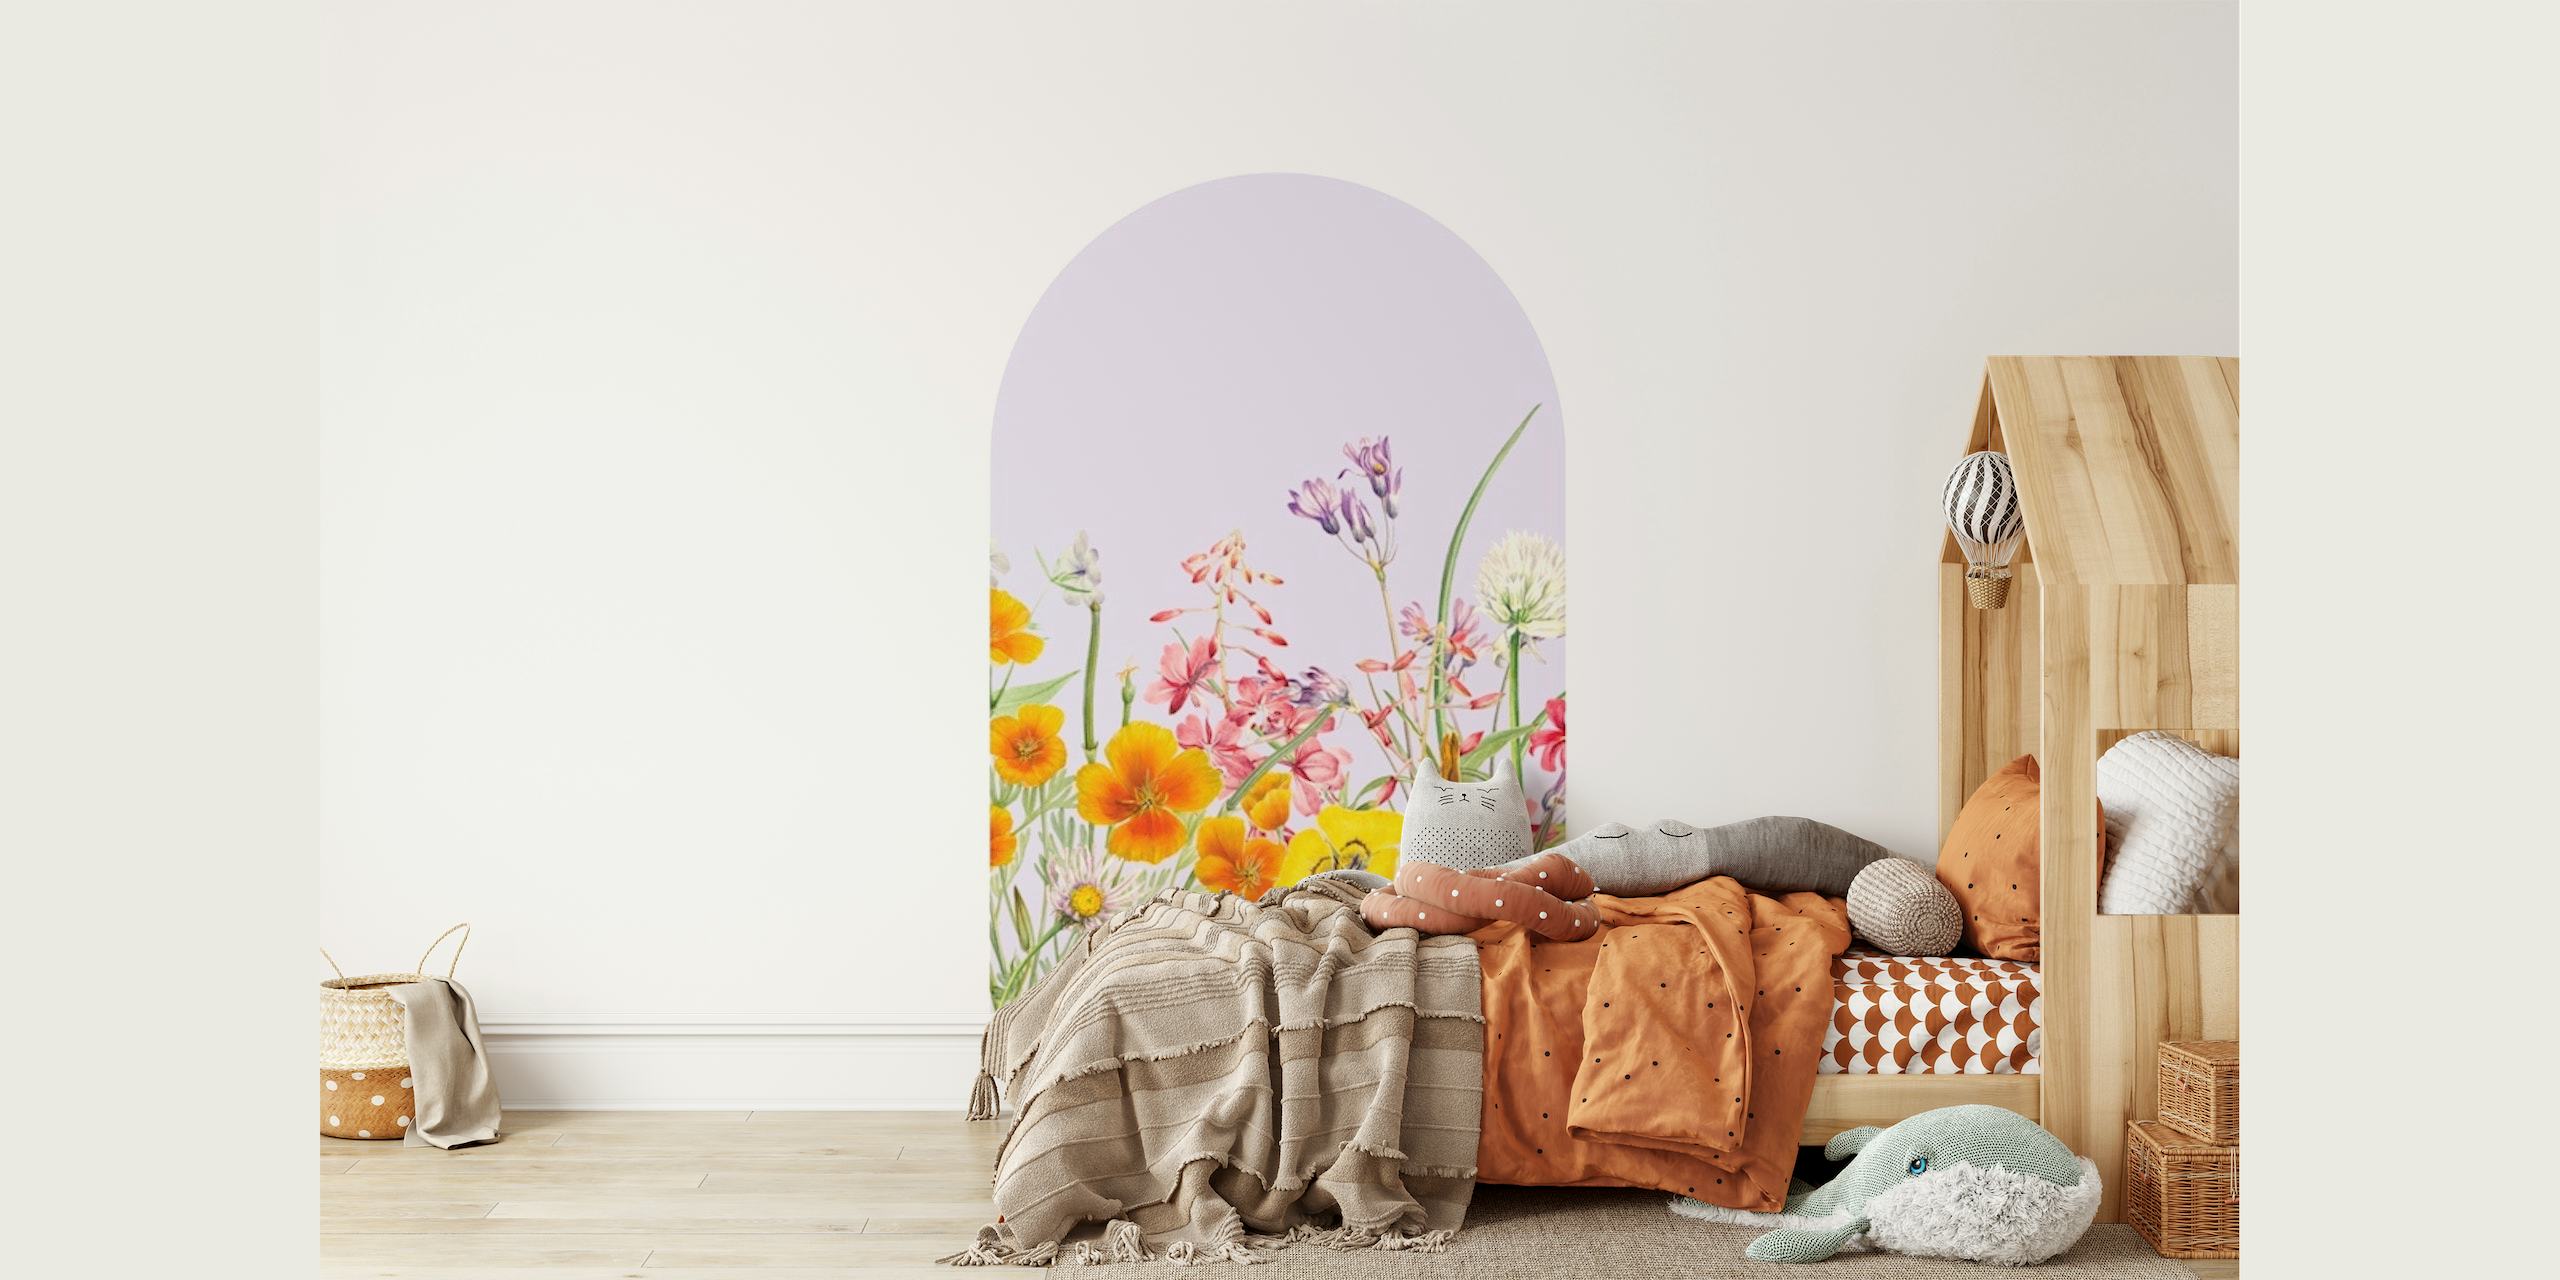 Mural de parede em arco floral pastel com flores silvestres em tons suaves